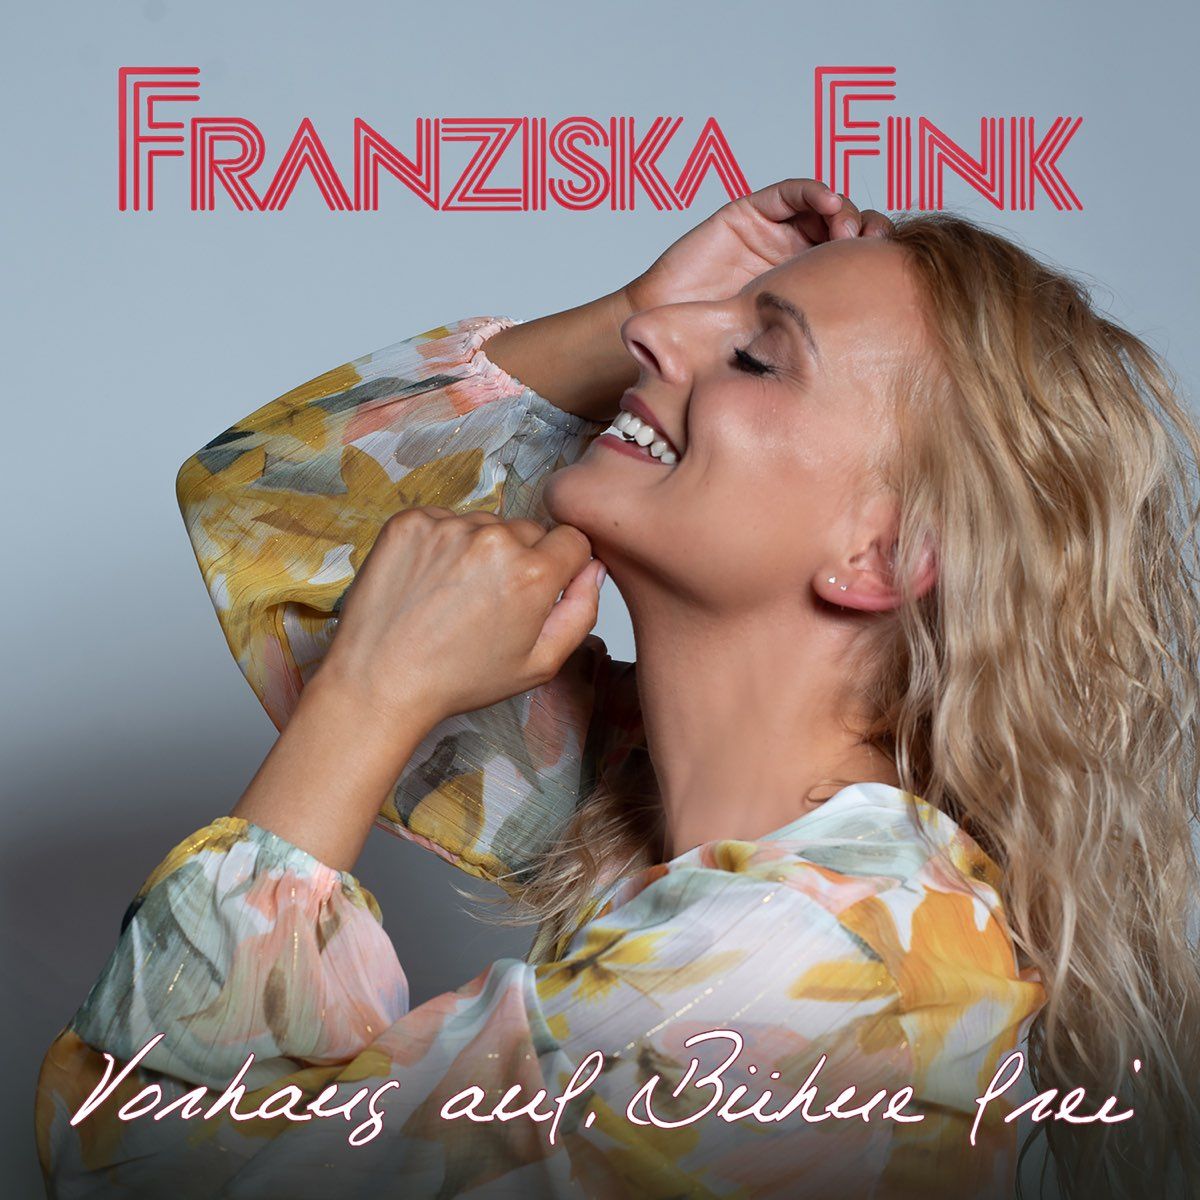 Franziska Fink - Vorhang auf, Bühne frei